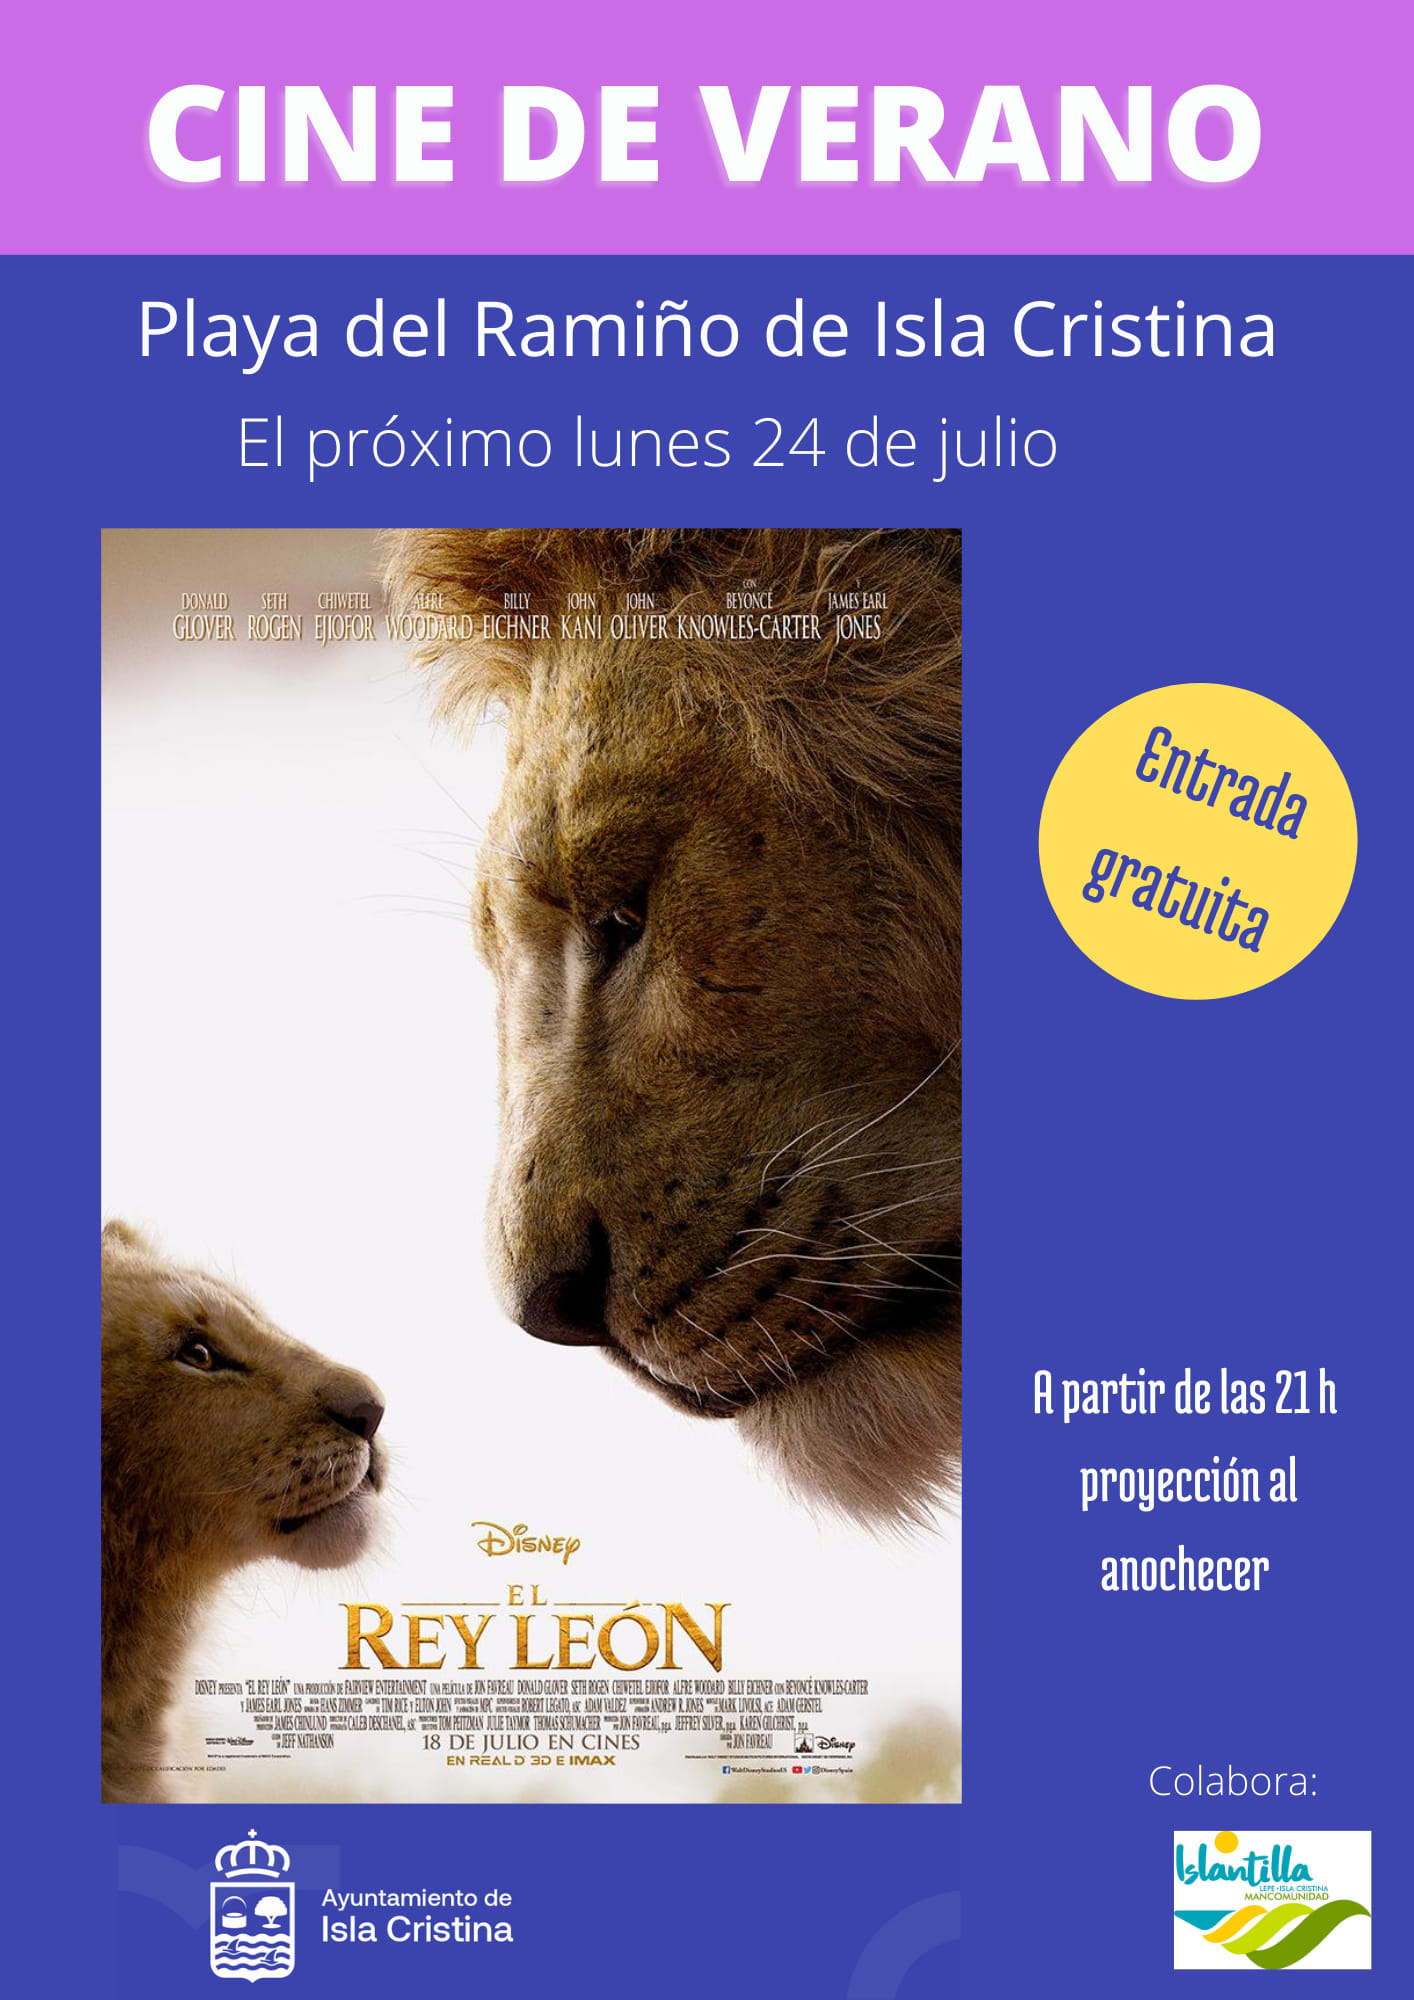 El Rey León, Cine de Verano, Isla Cristina en la Playa